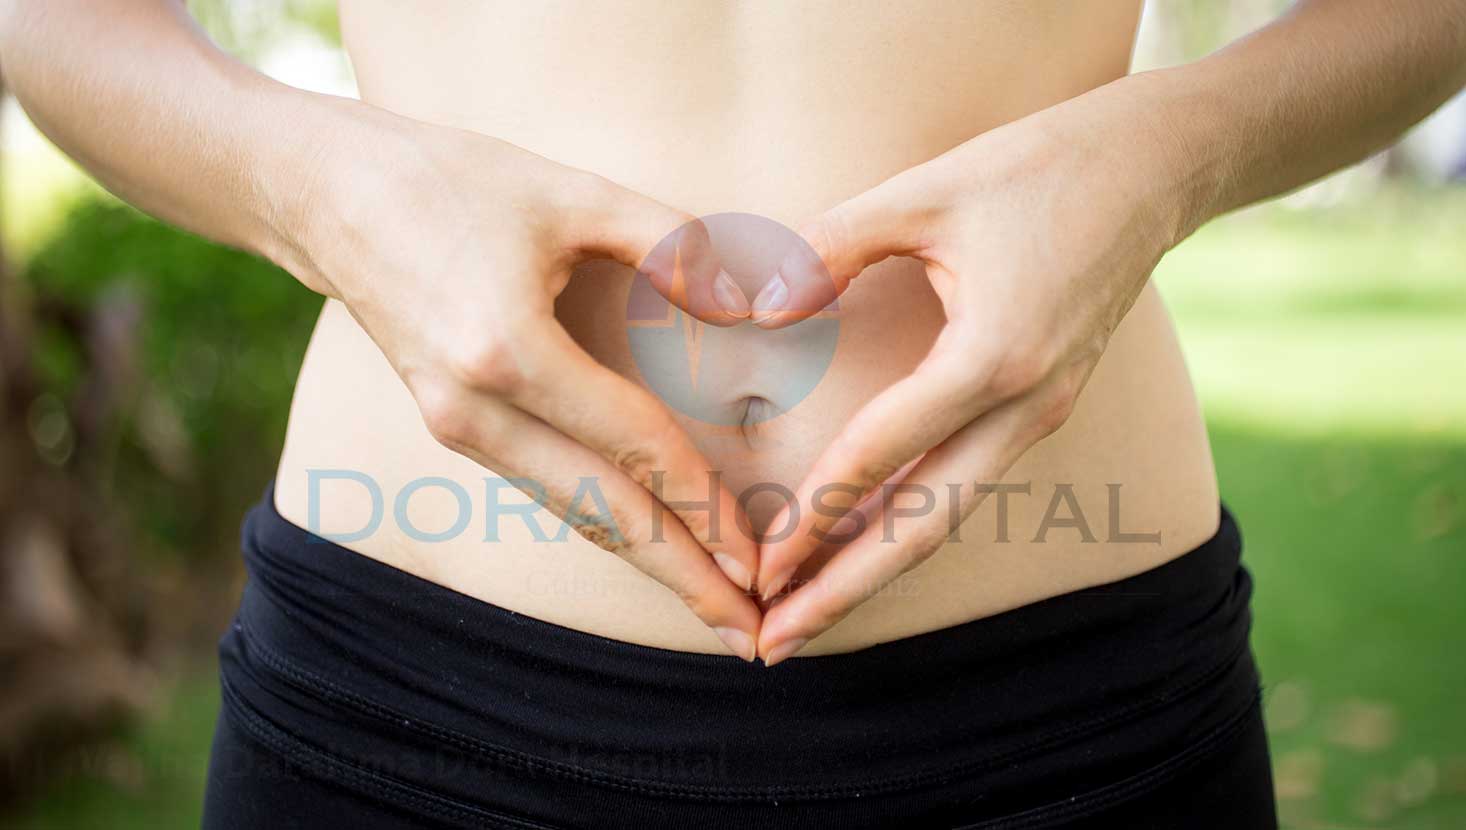 Vajina Daraltma Dora Hospital